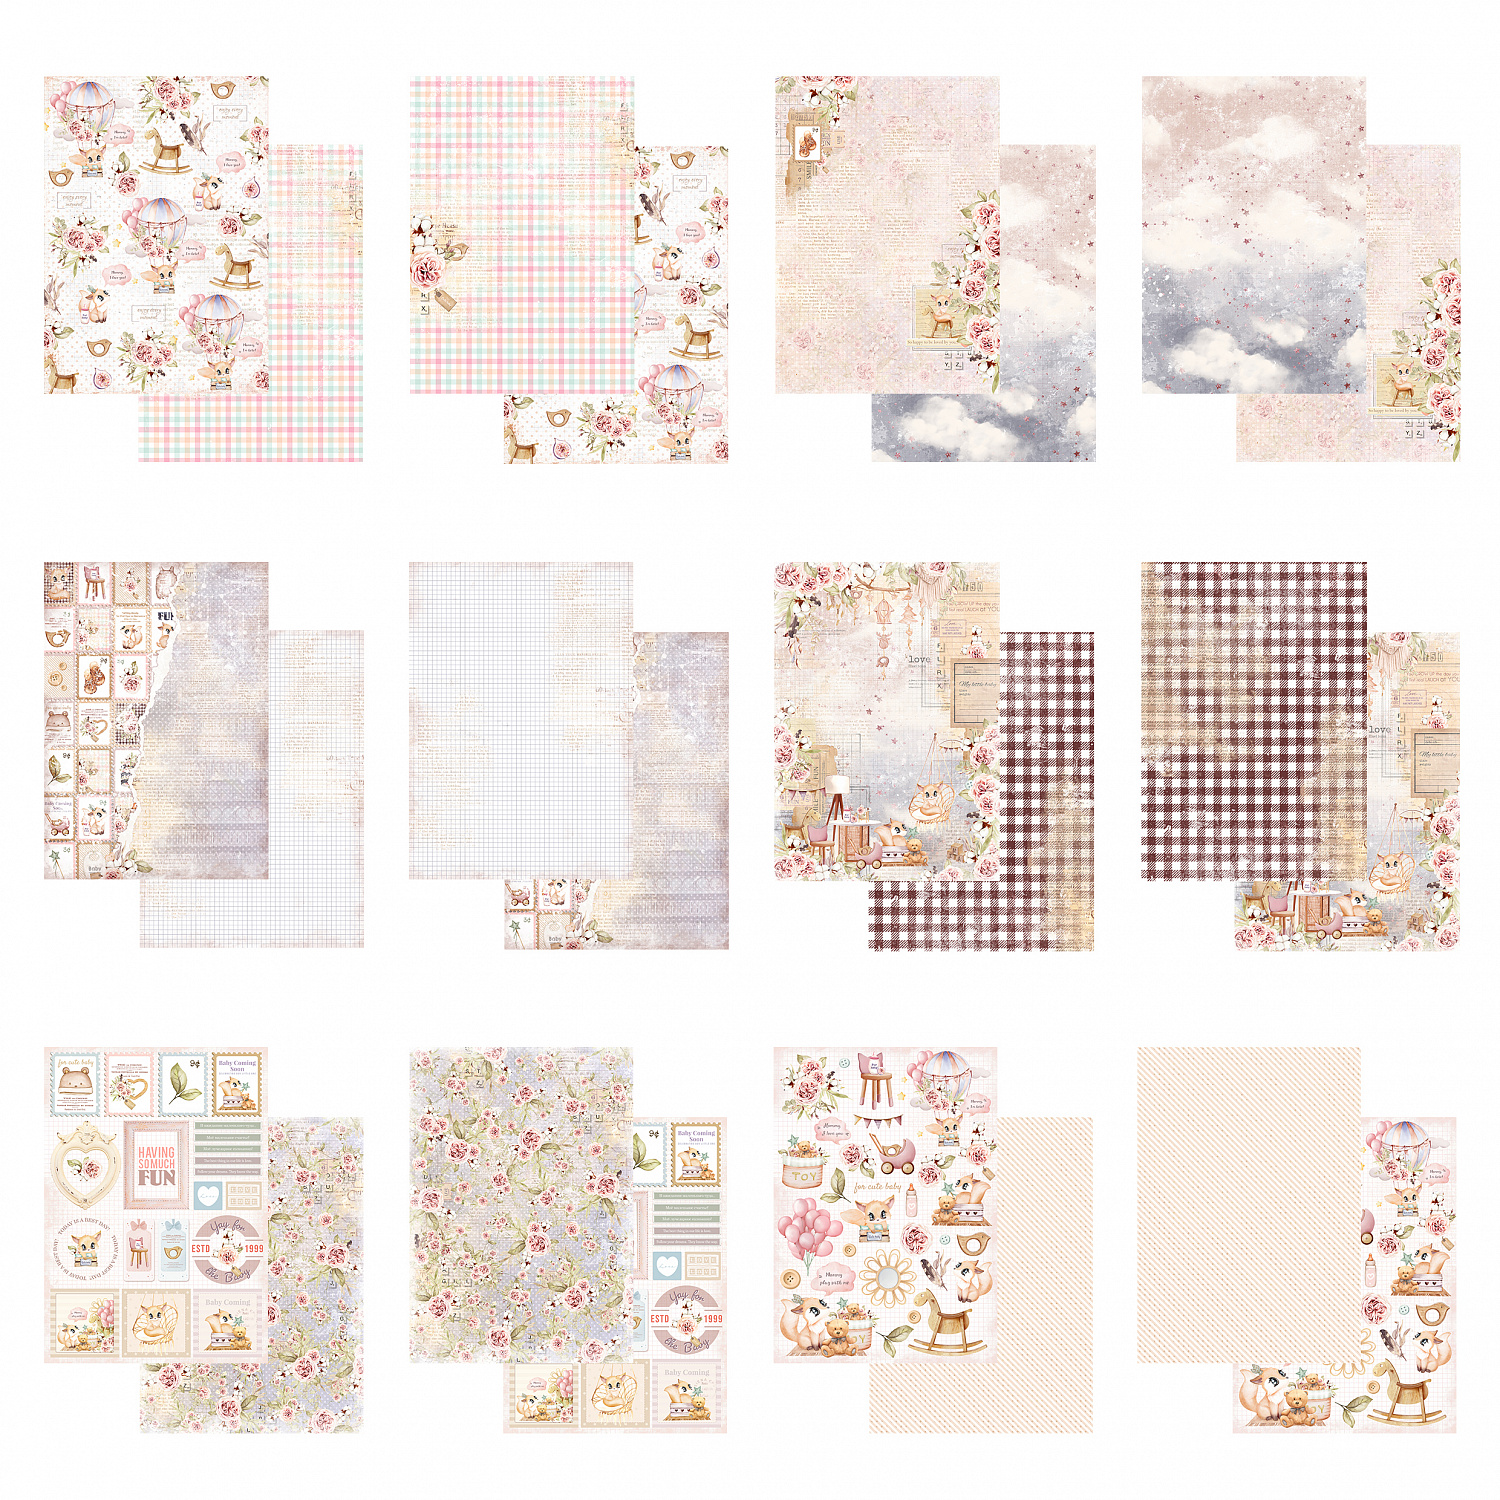 картинка Набор бумаги  "Sweet & cute" DB0008-A4, A4, 12 двусторонних листов, пл. 190 г/м2 от магазина Компания+